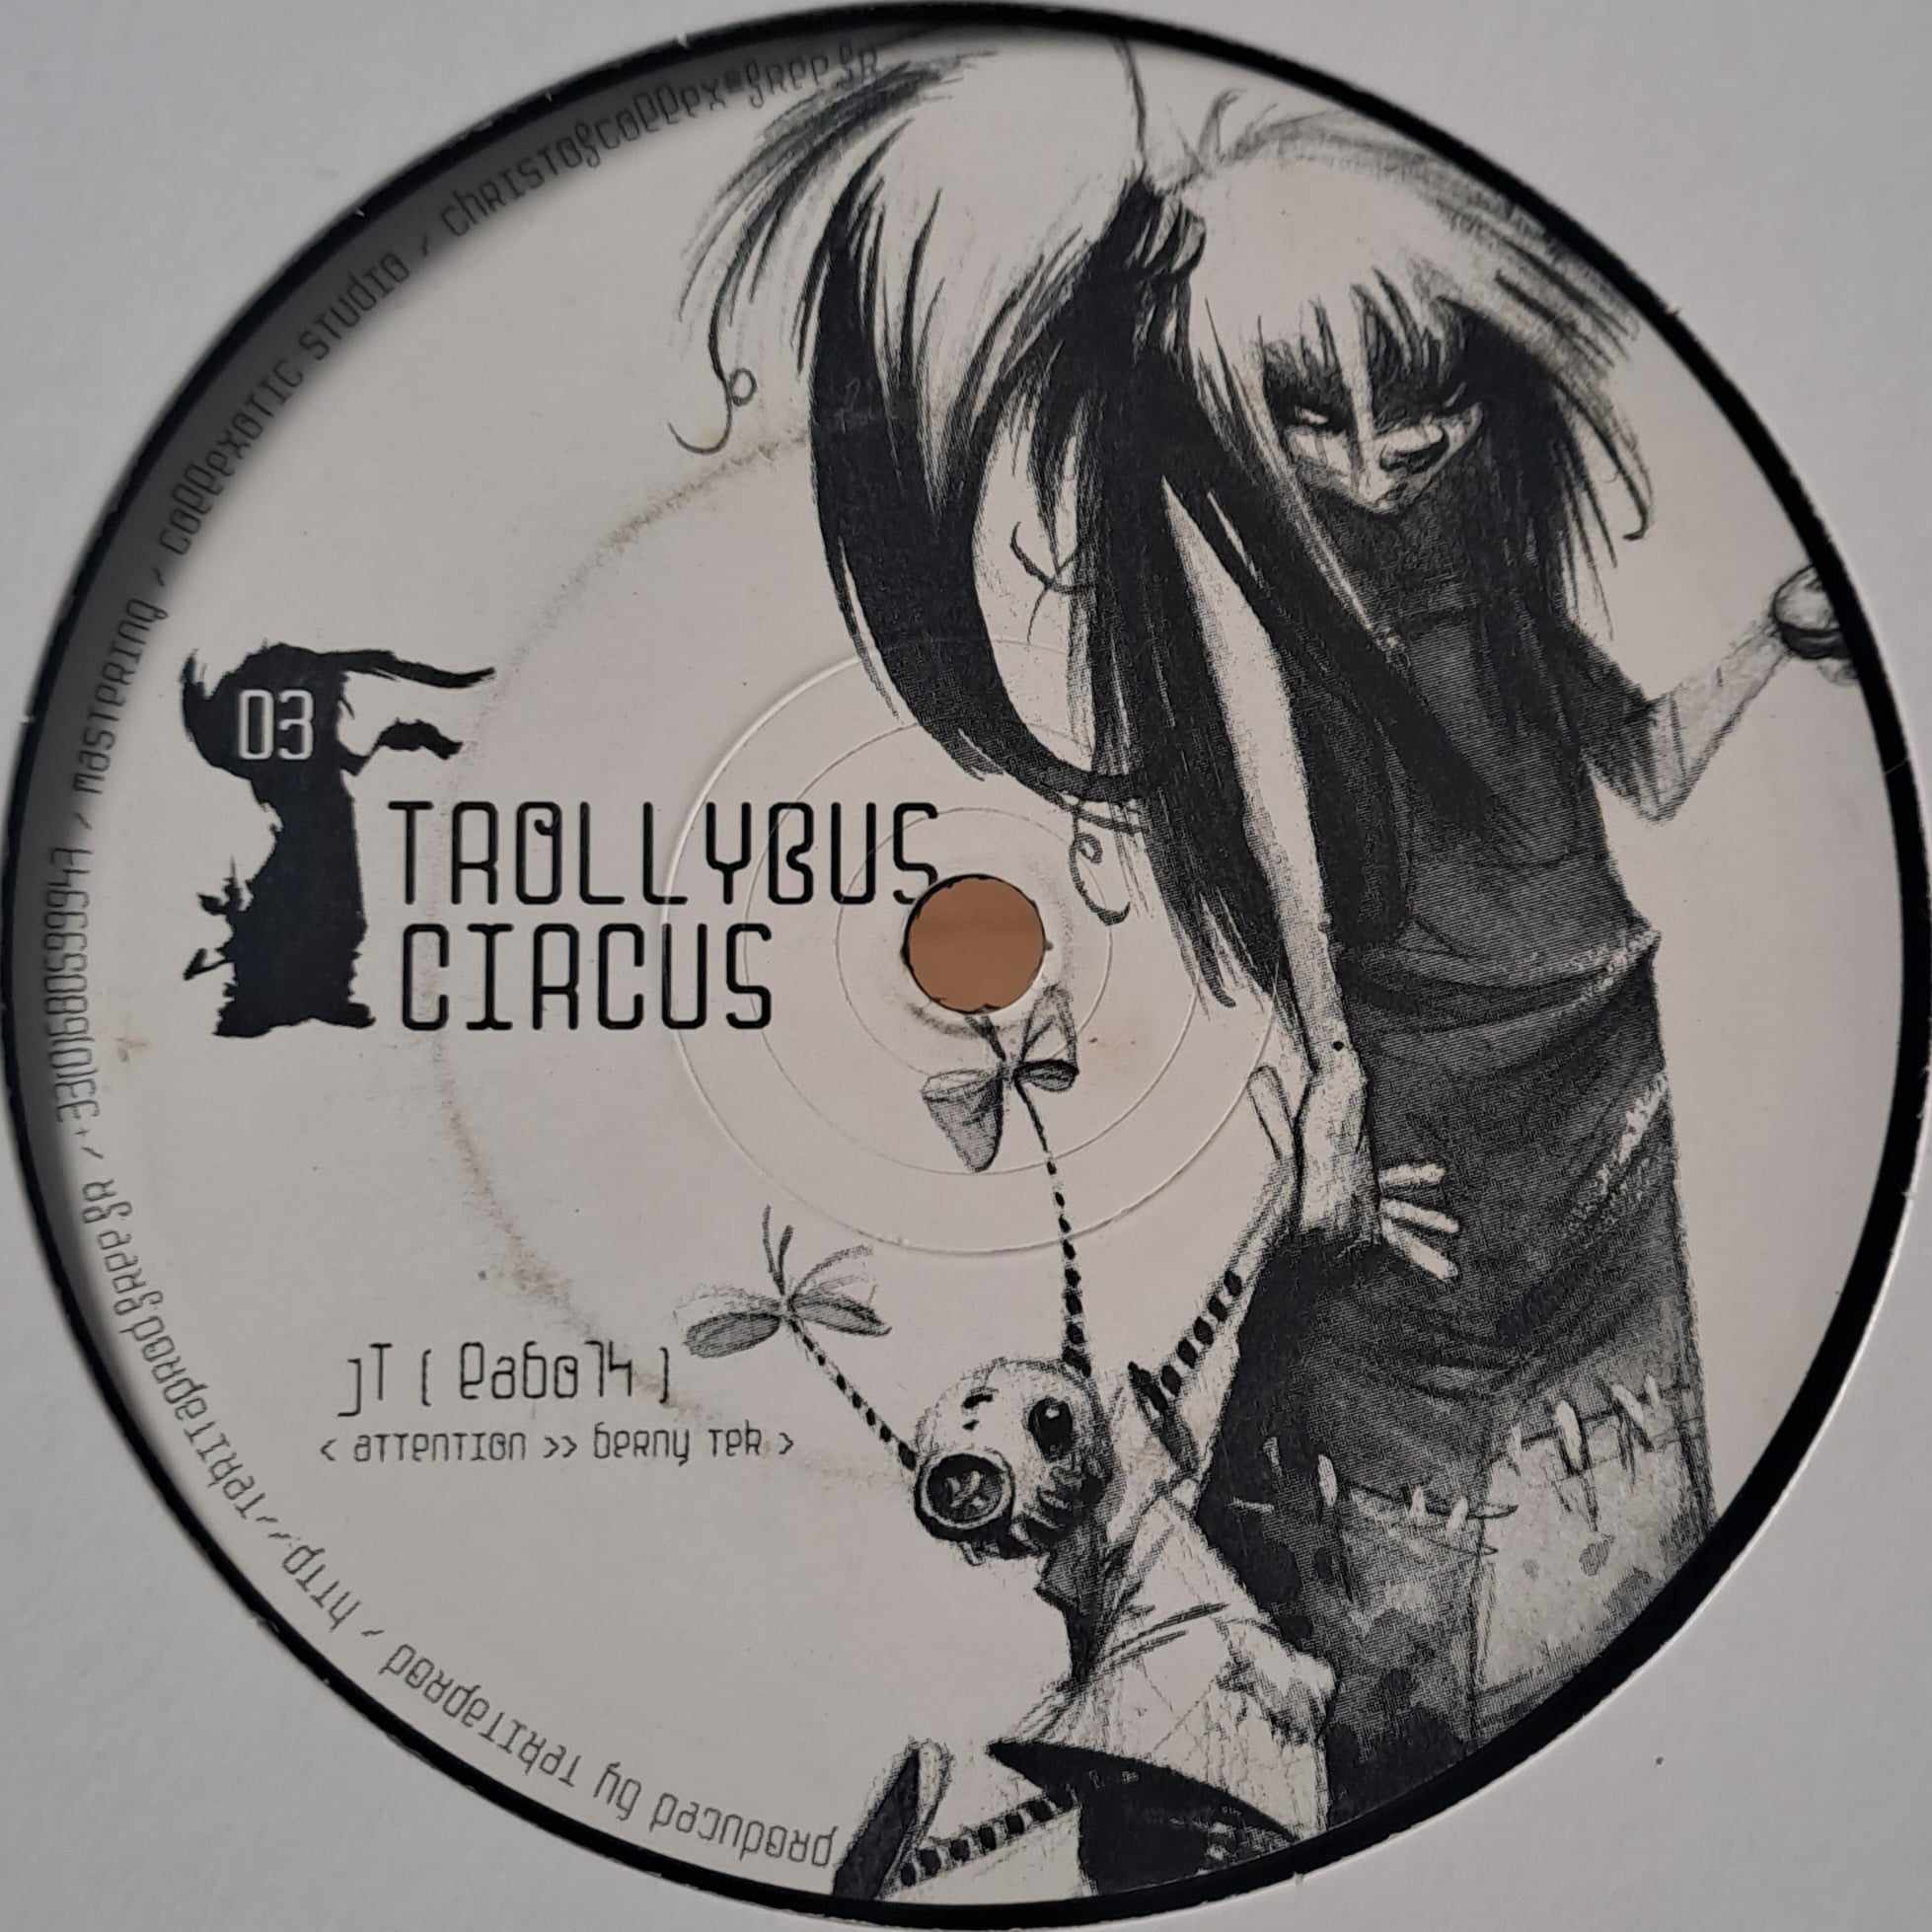 Trollybus Circus 03 - vinyle freetekno